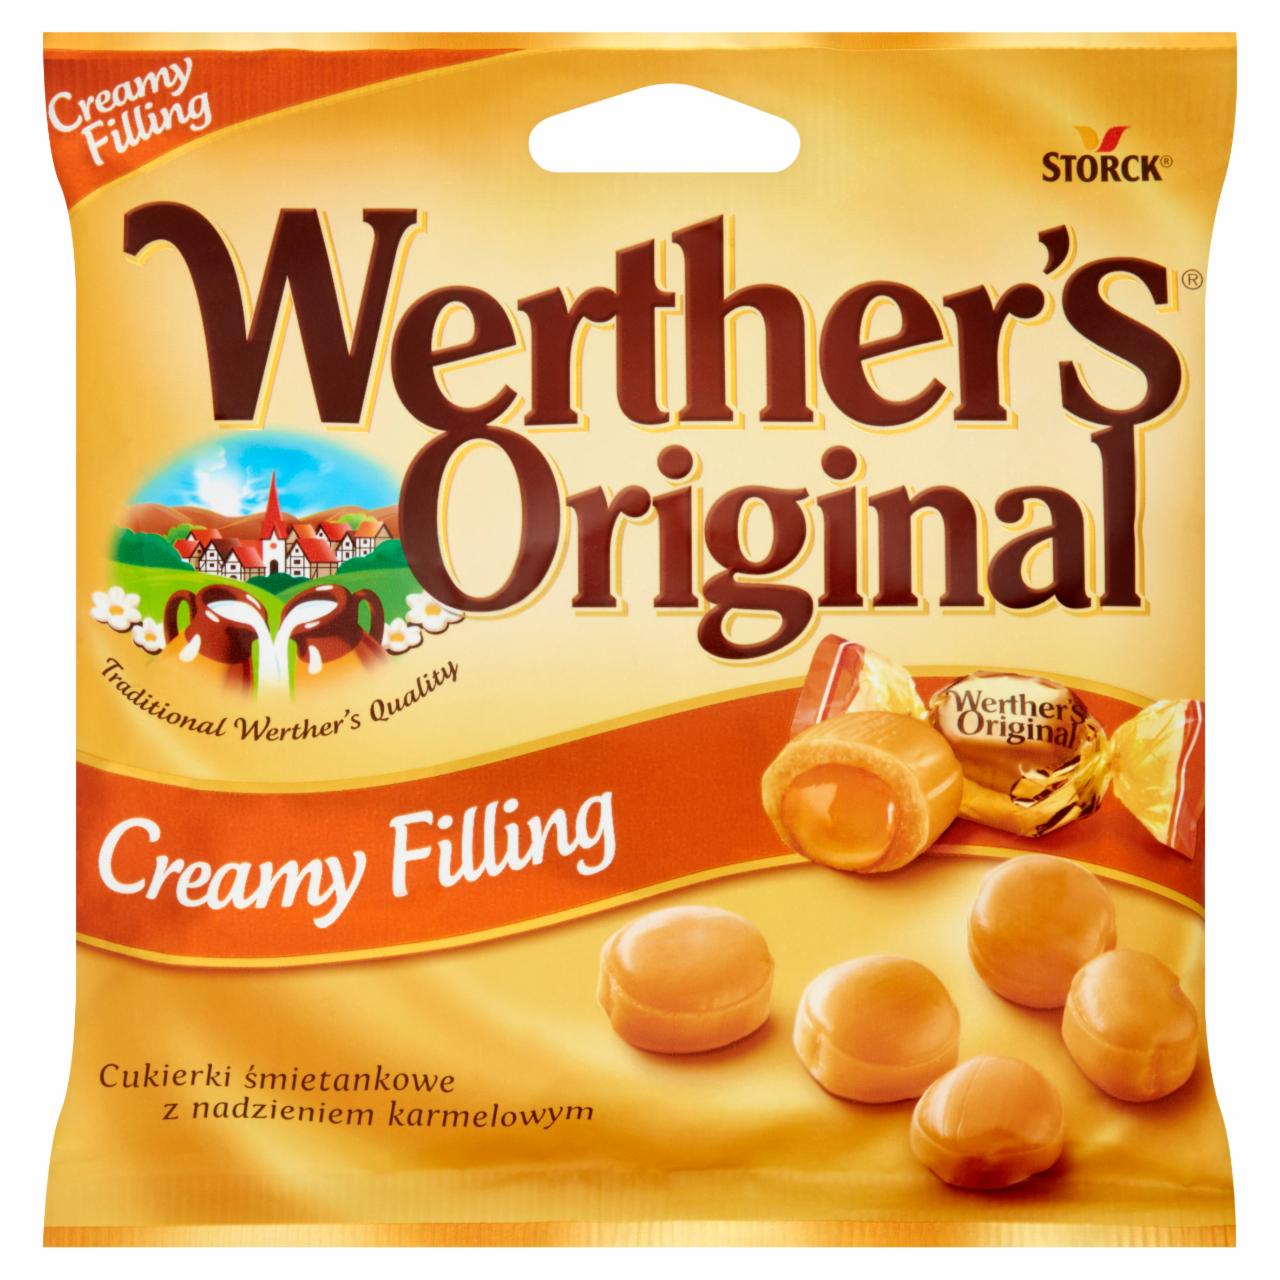 Zdjęcia - Werther's Original Cukierki śmietankowe z nadzieniem karmelowym 80 g